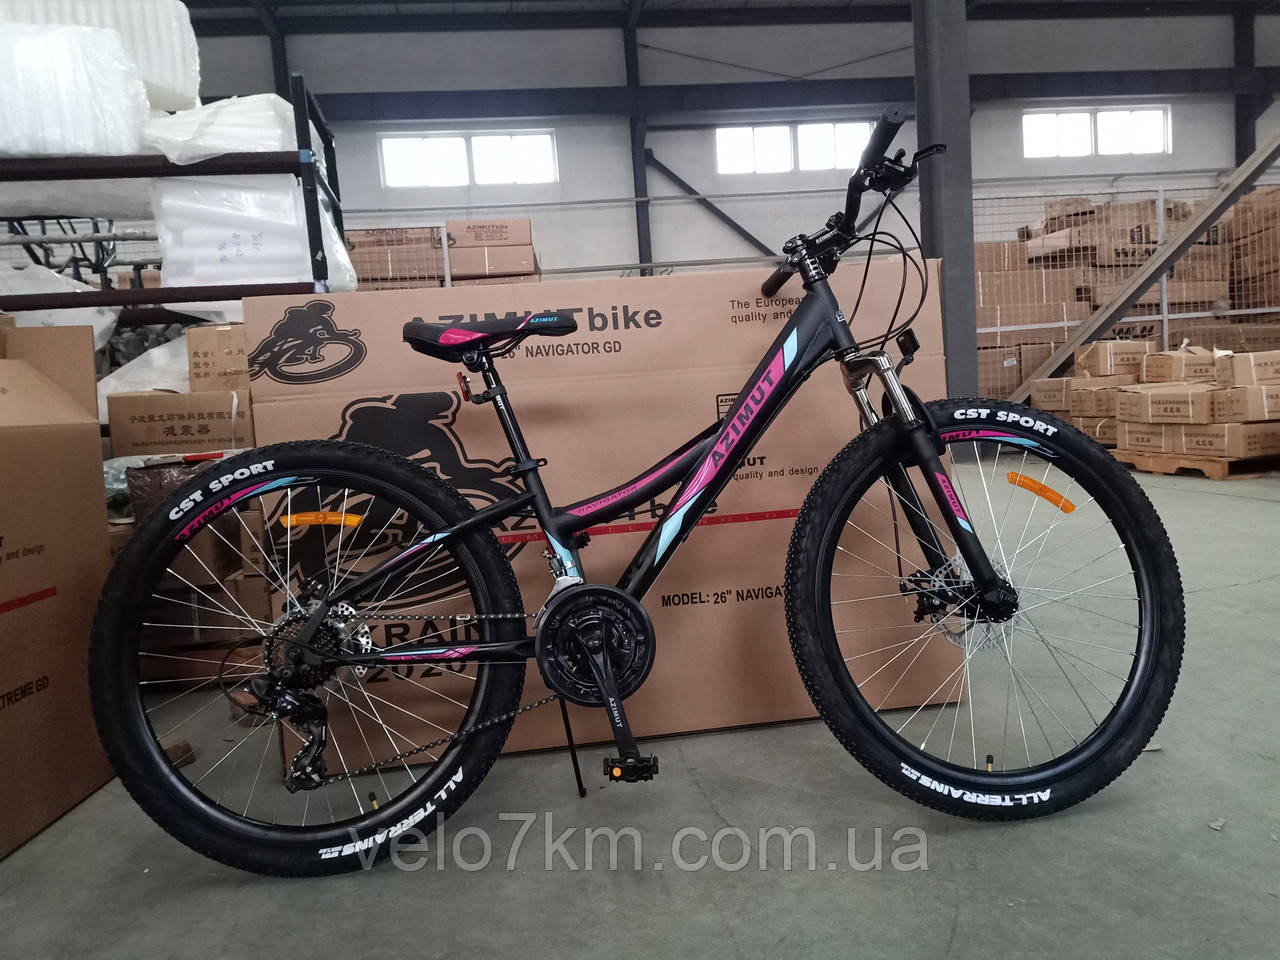 Гірський підлітковий велосипед Azimut Navigator 24 бели (з фіолет.і рожевими вставками)на 85% зібраний у коробці